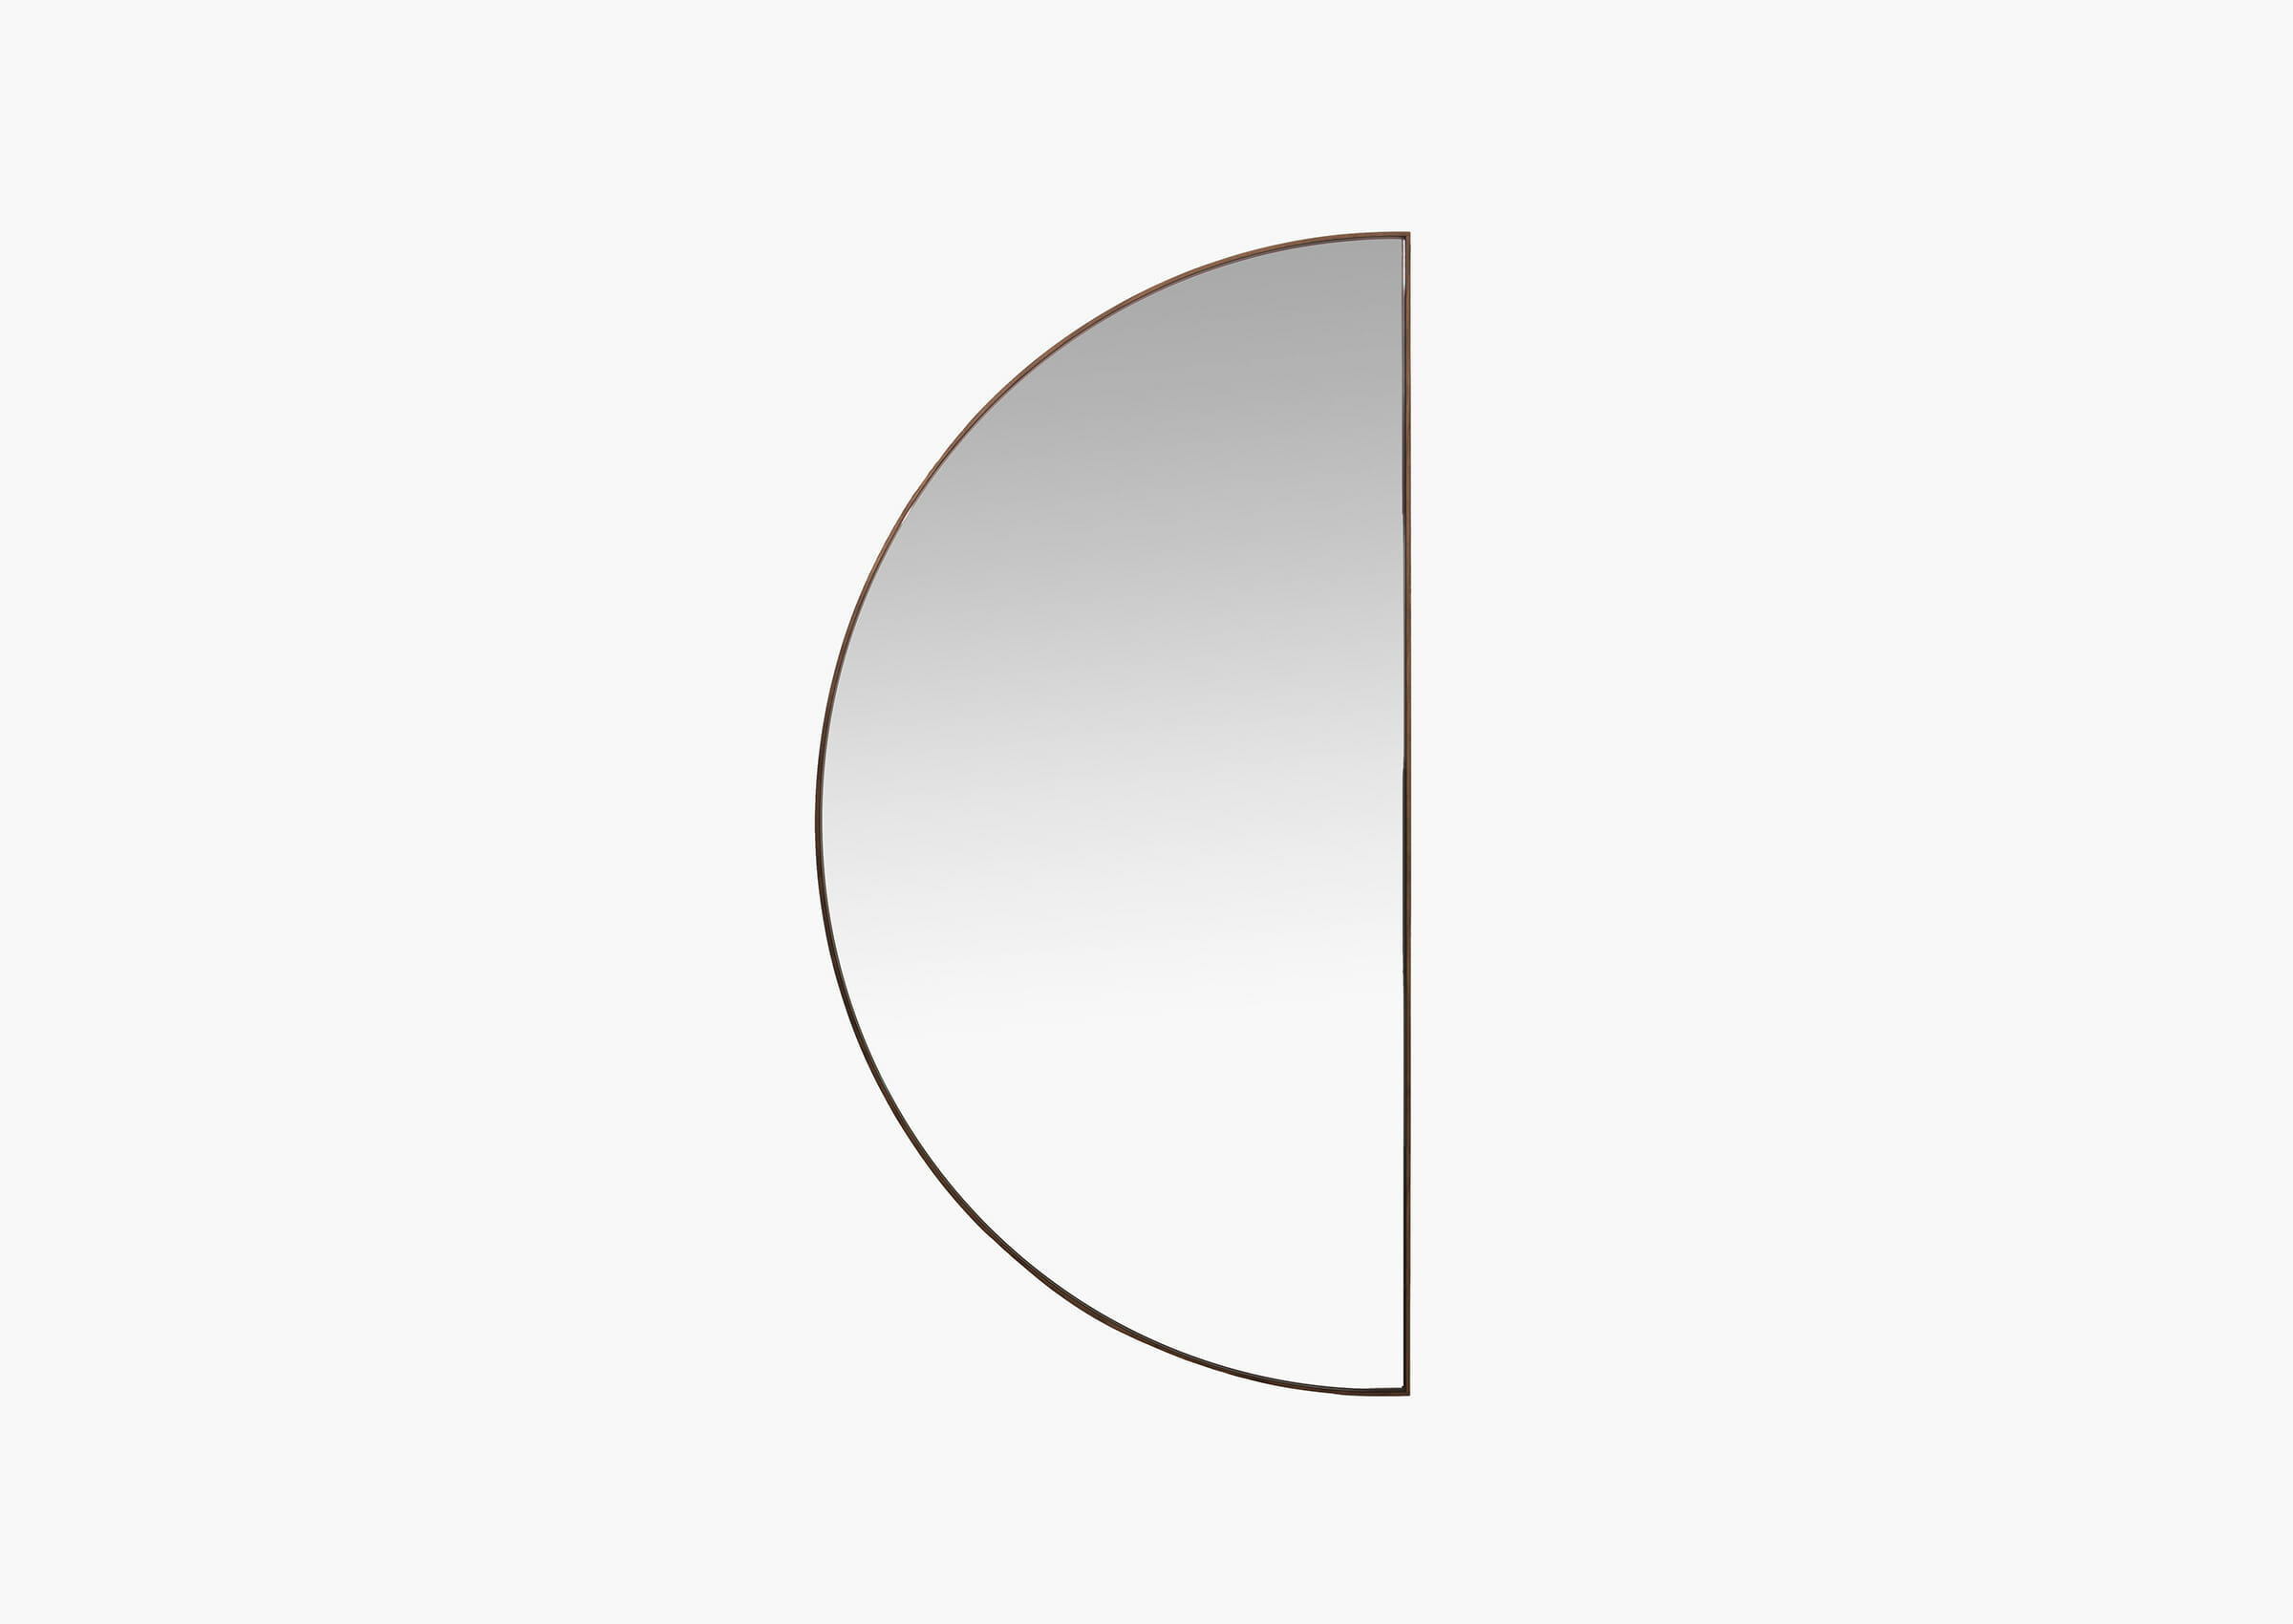 Зеркала чебоксары купить. Зеркало настенное полукруглое. Зеркало простое. Зеркало настенное полукруг. Зеркало интерьерное настенное полукруг.